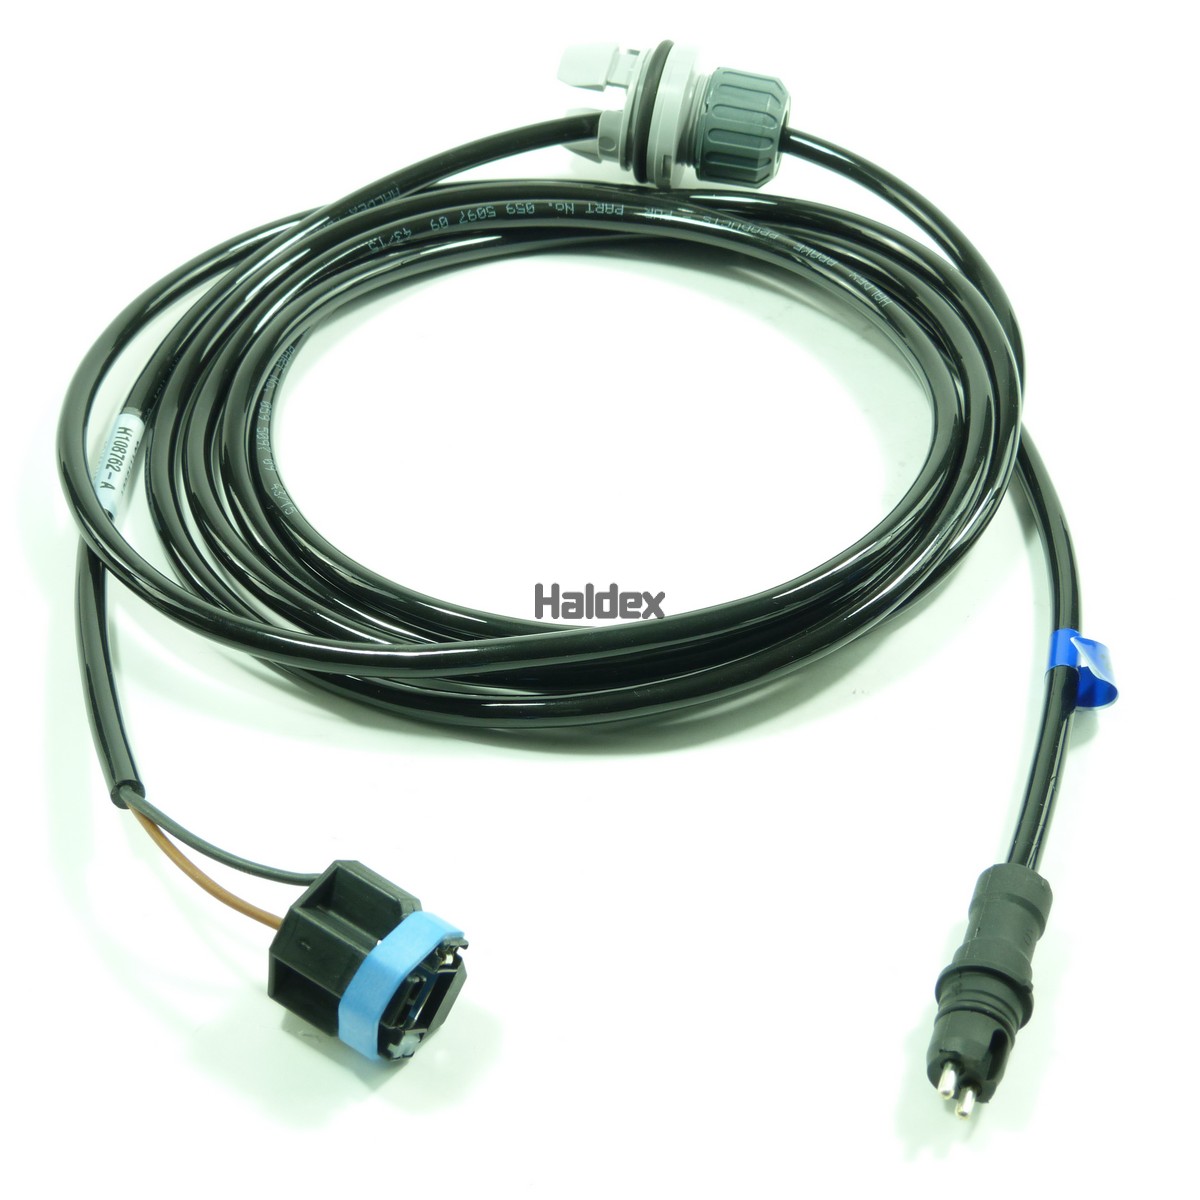 Niedax 065707  Universal-Bügelschelle für 1 Kabel Ø 40-46 mm